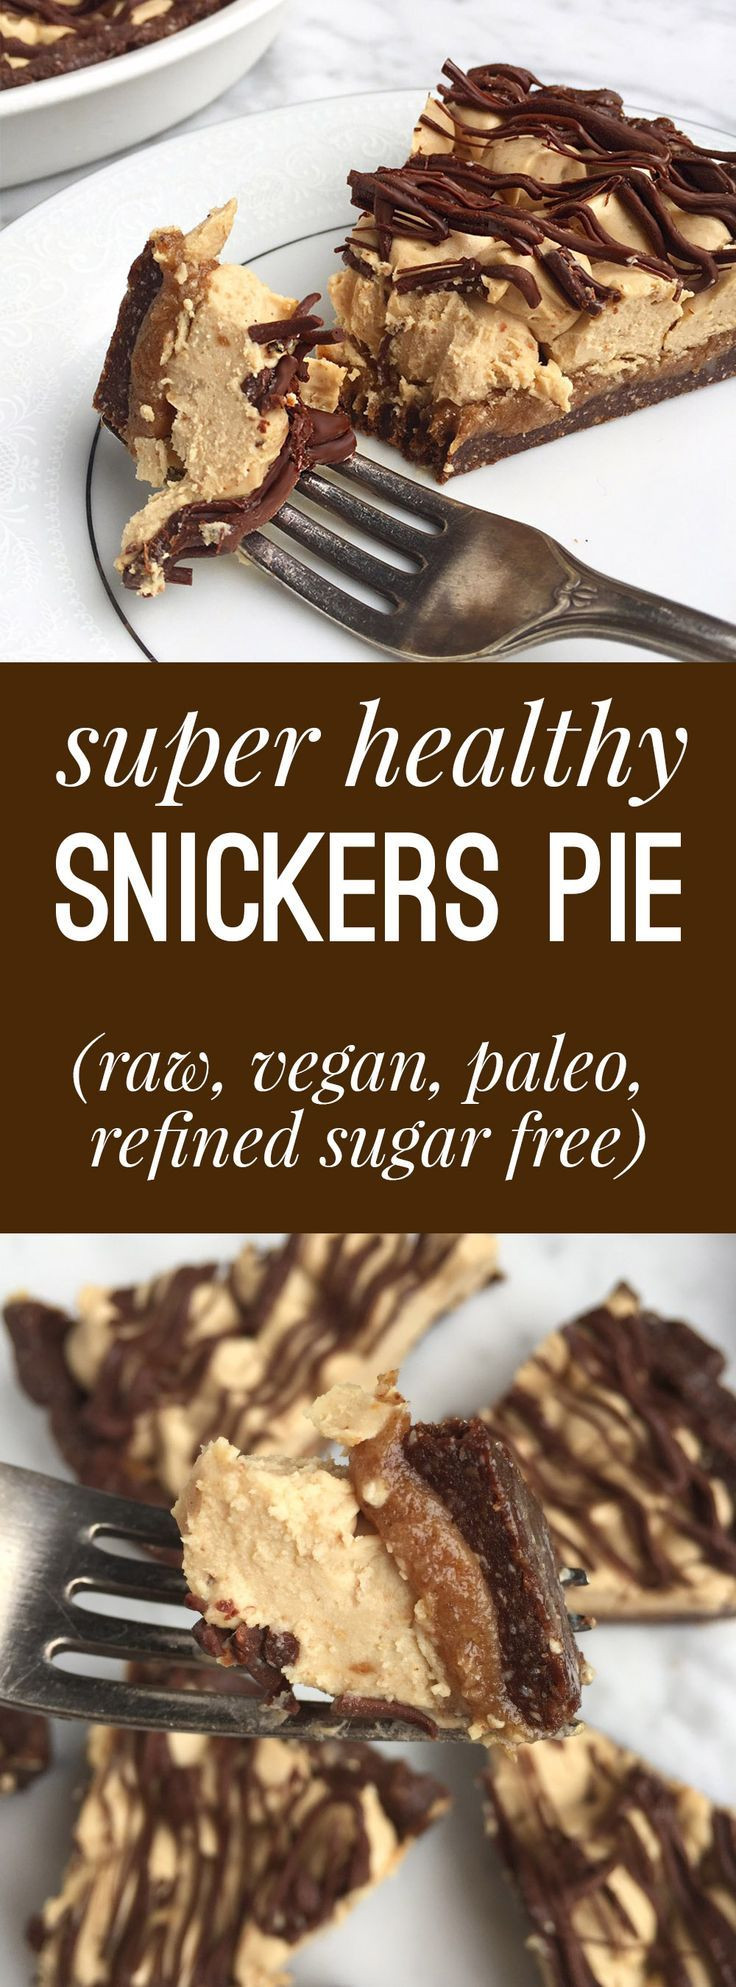 Sugar Free Vegan Desserts
 Healthy Snickers Pie Raw Vegan Gluten Grain Free